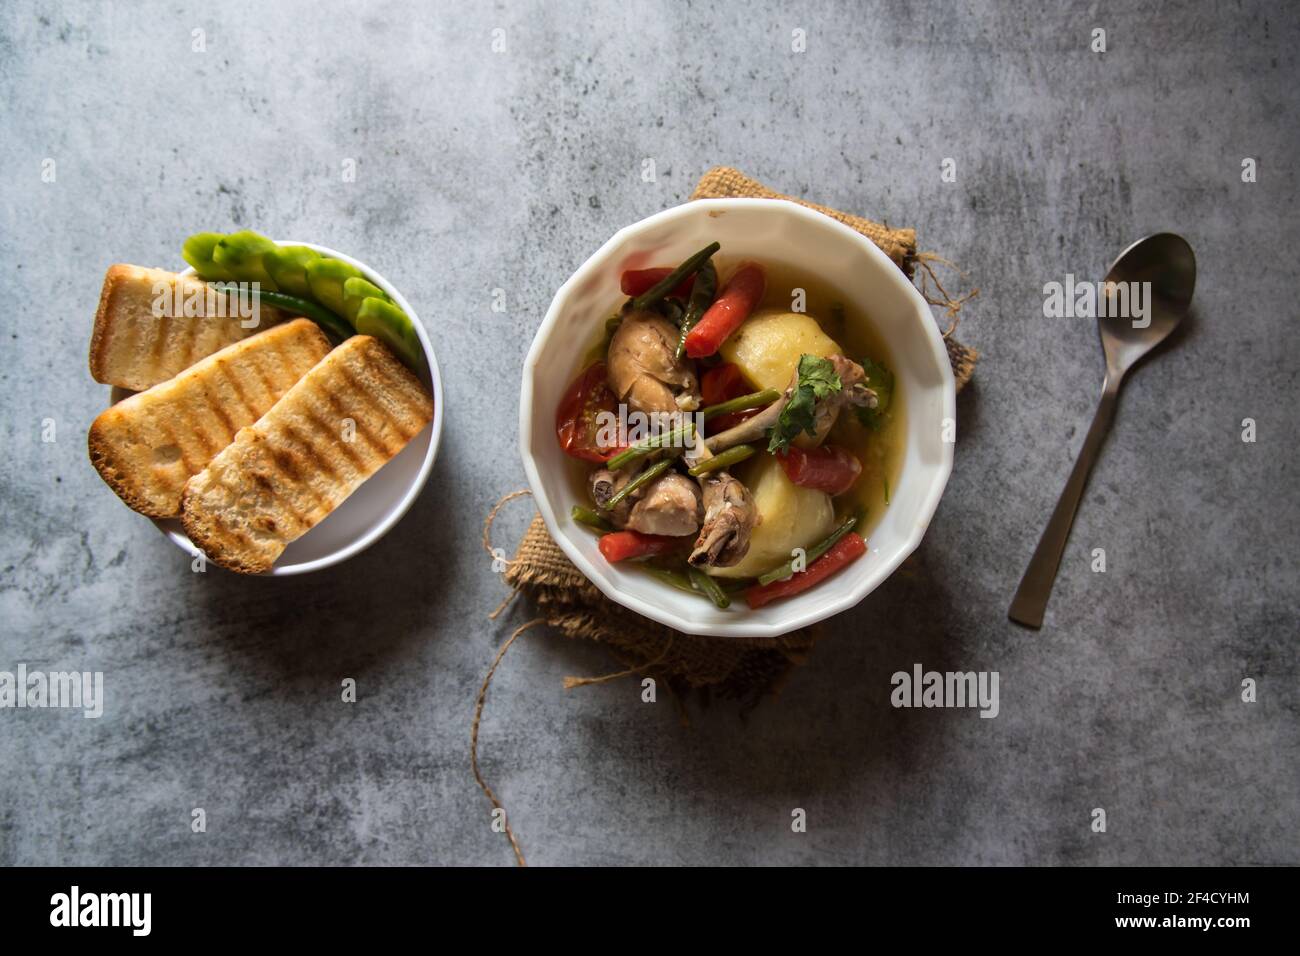 Ragoût de poulet et légumes dans un bol et tranches de pain Banque D'Images